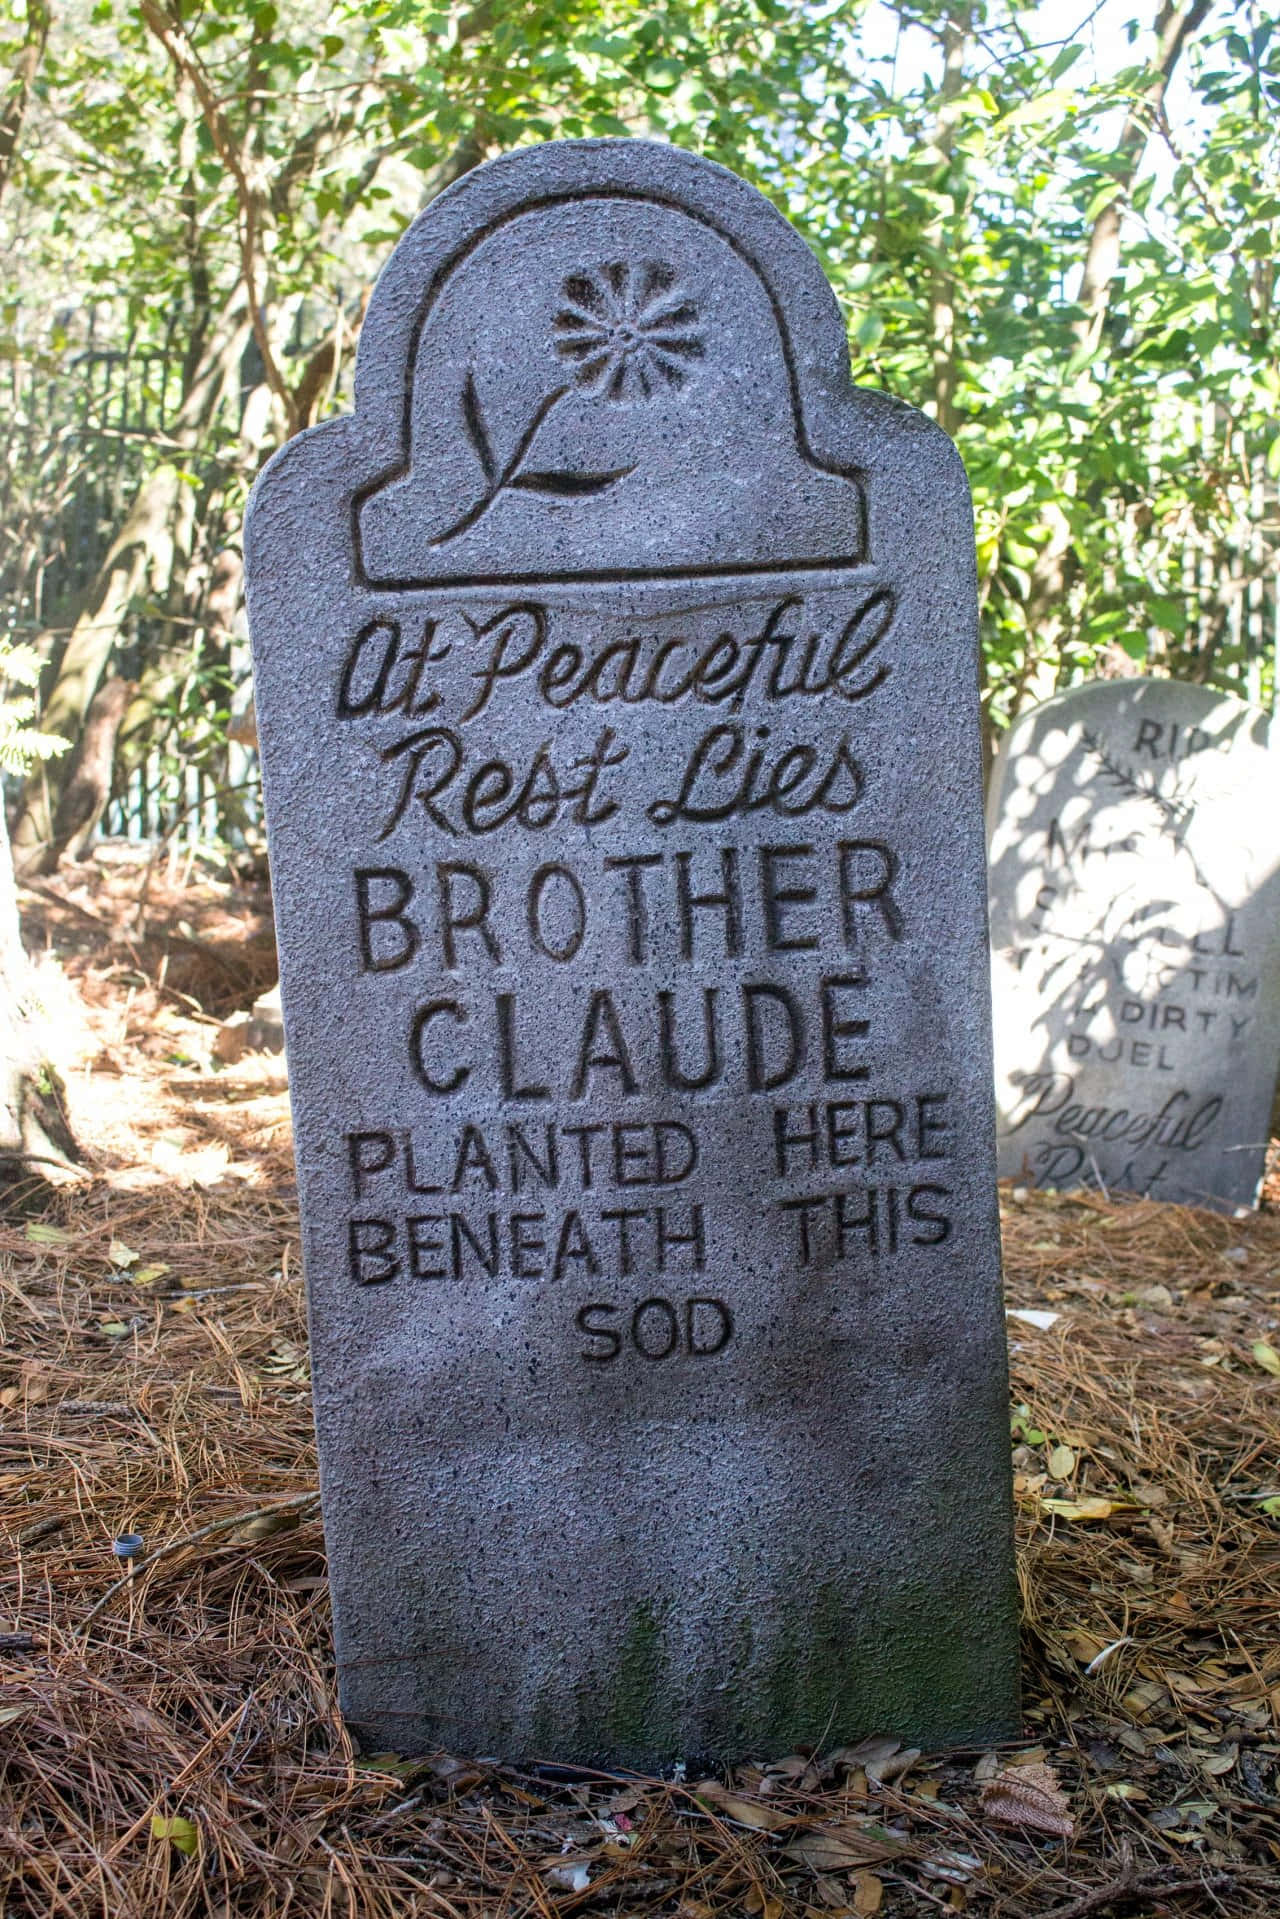 A Gravestone In A Cemetery